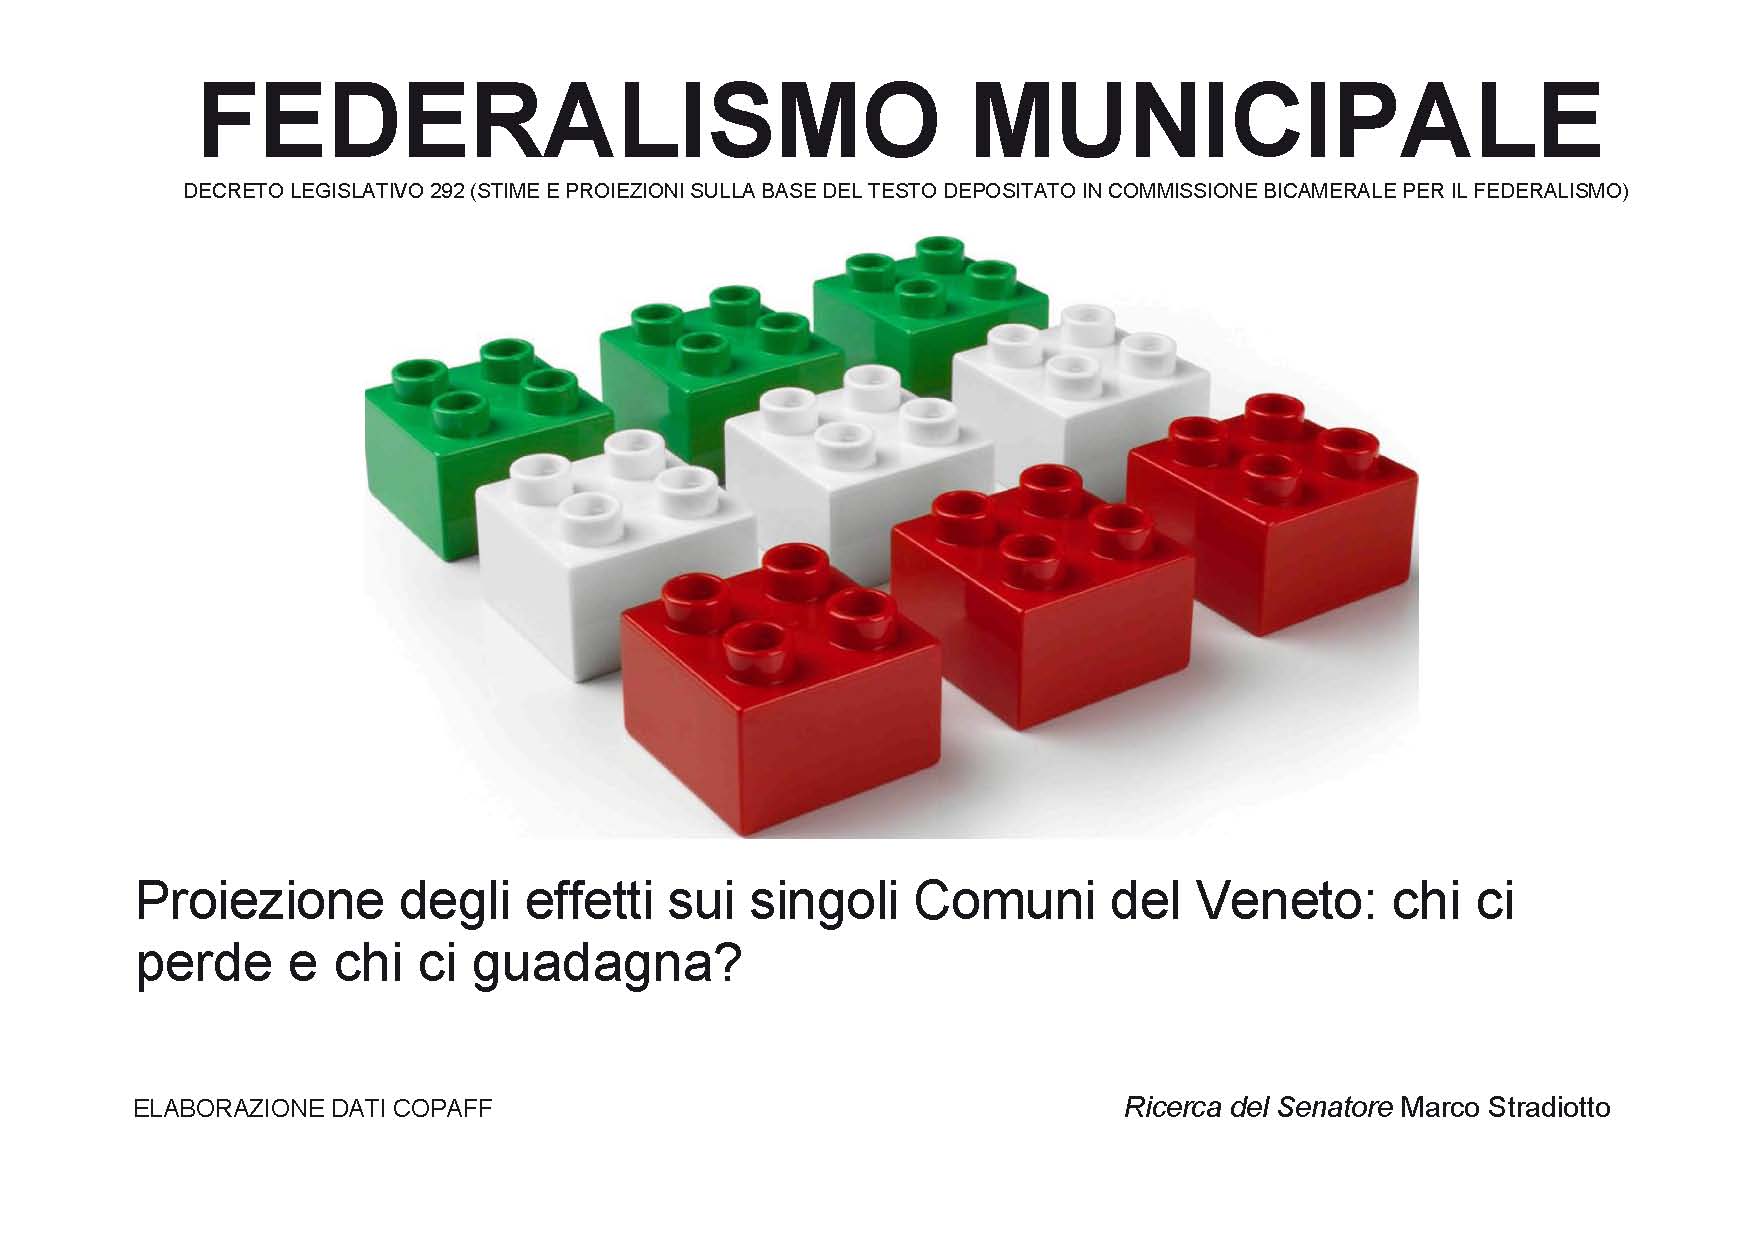 Federalismo immobiliare: Veneto spezzato